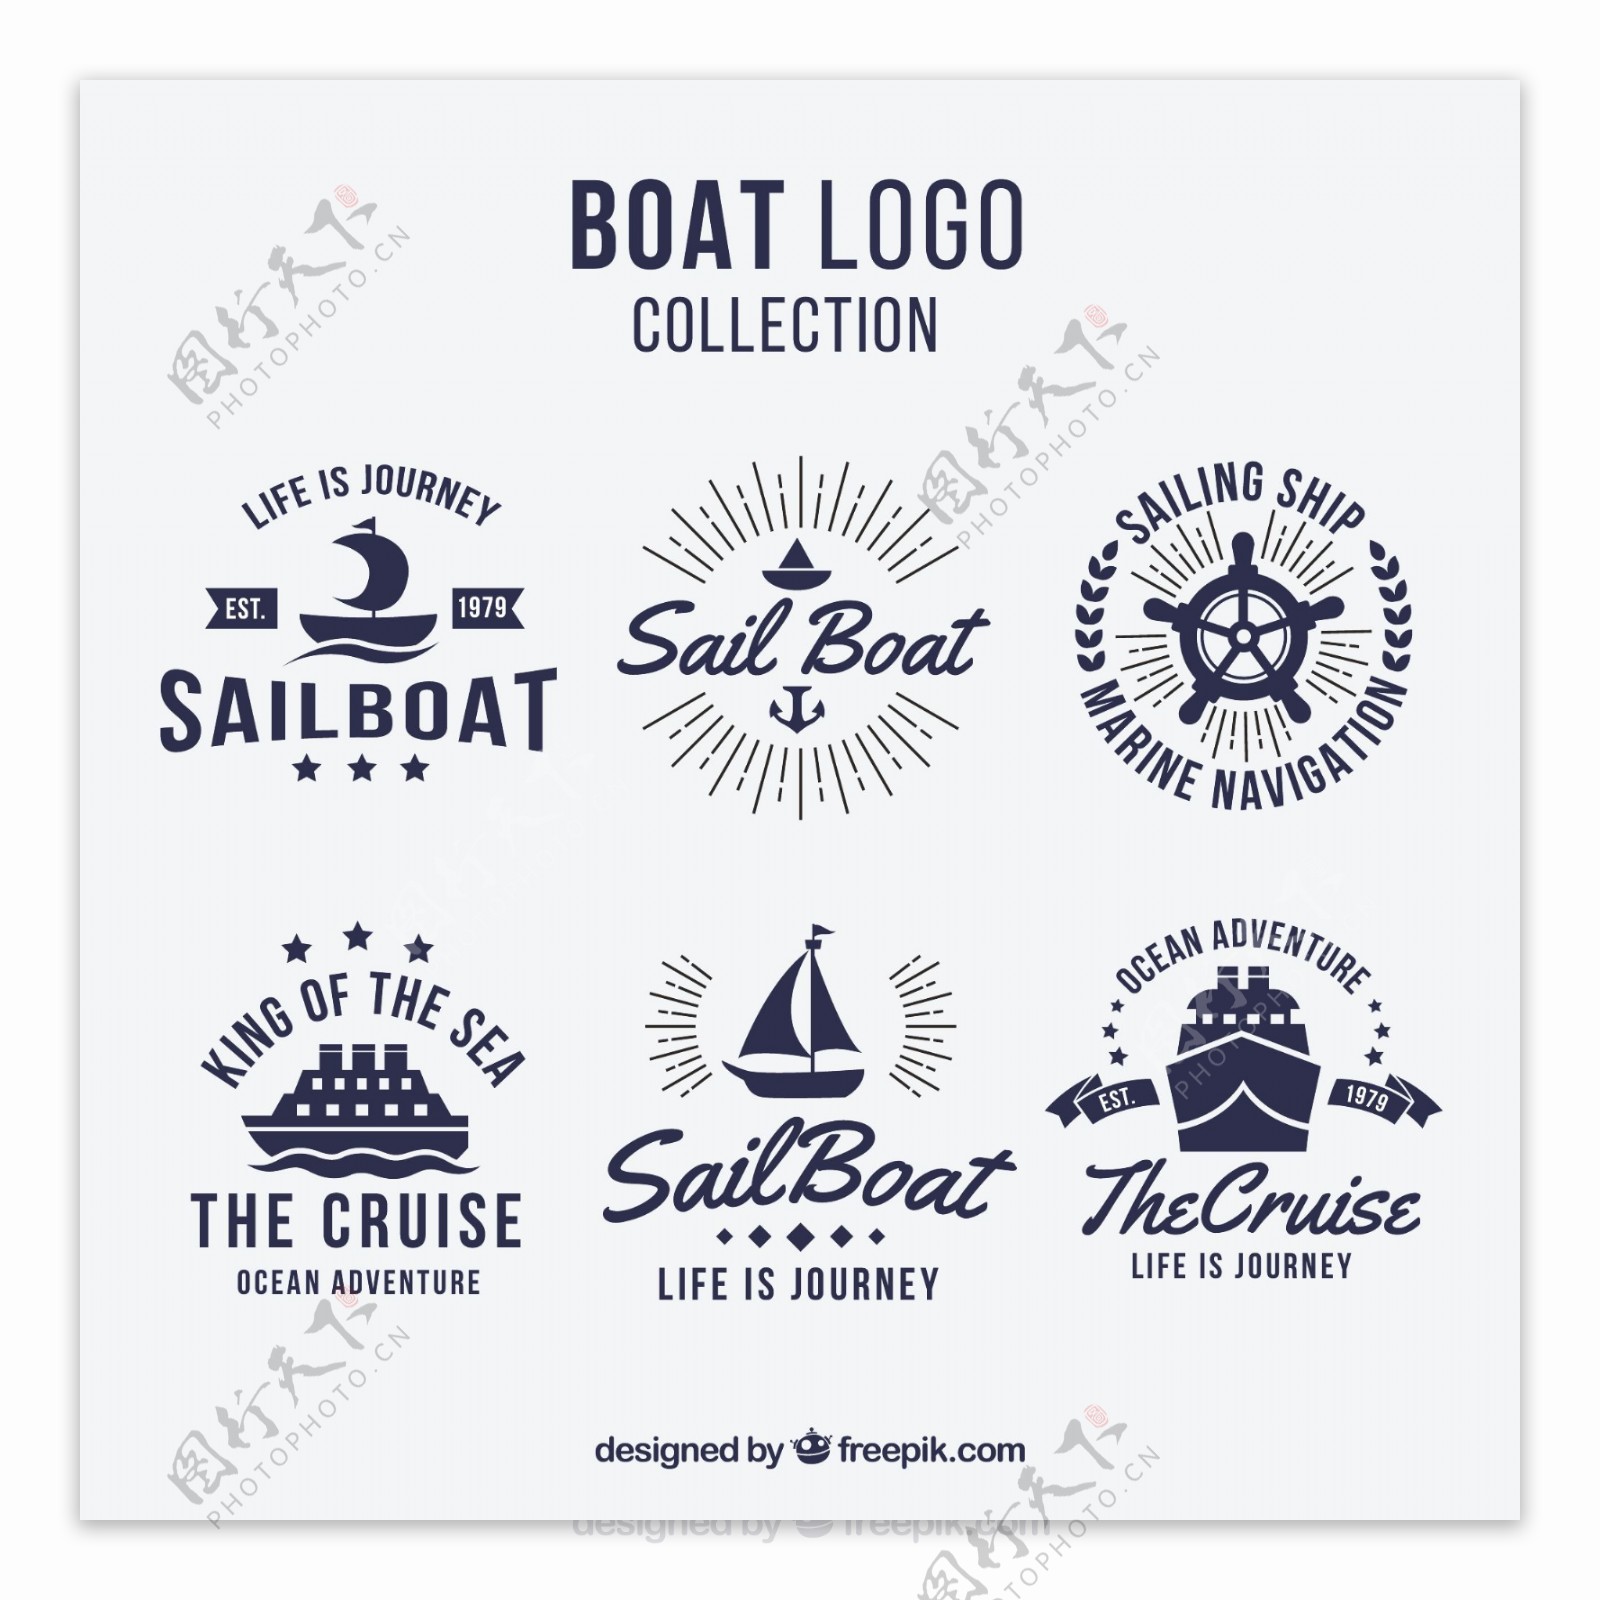 创意手绘船形标志logo矢量素材